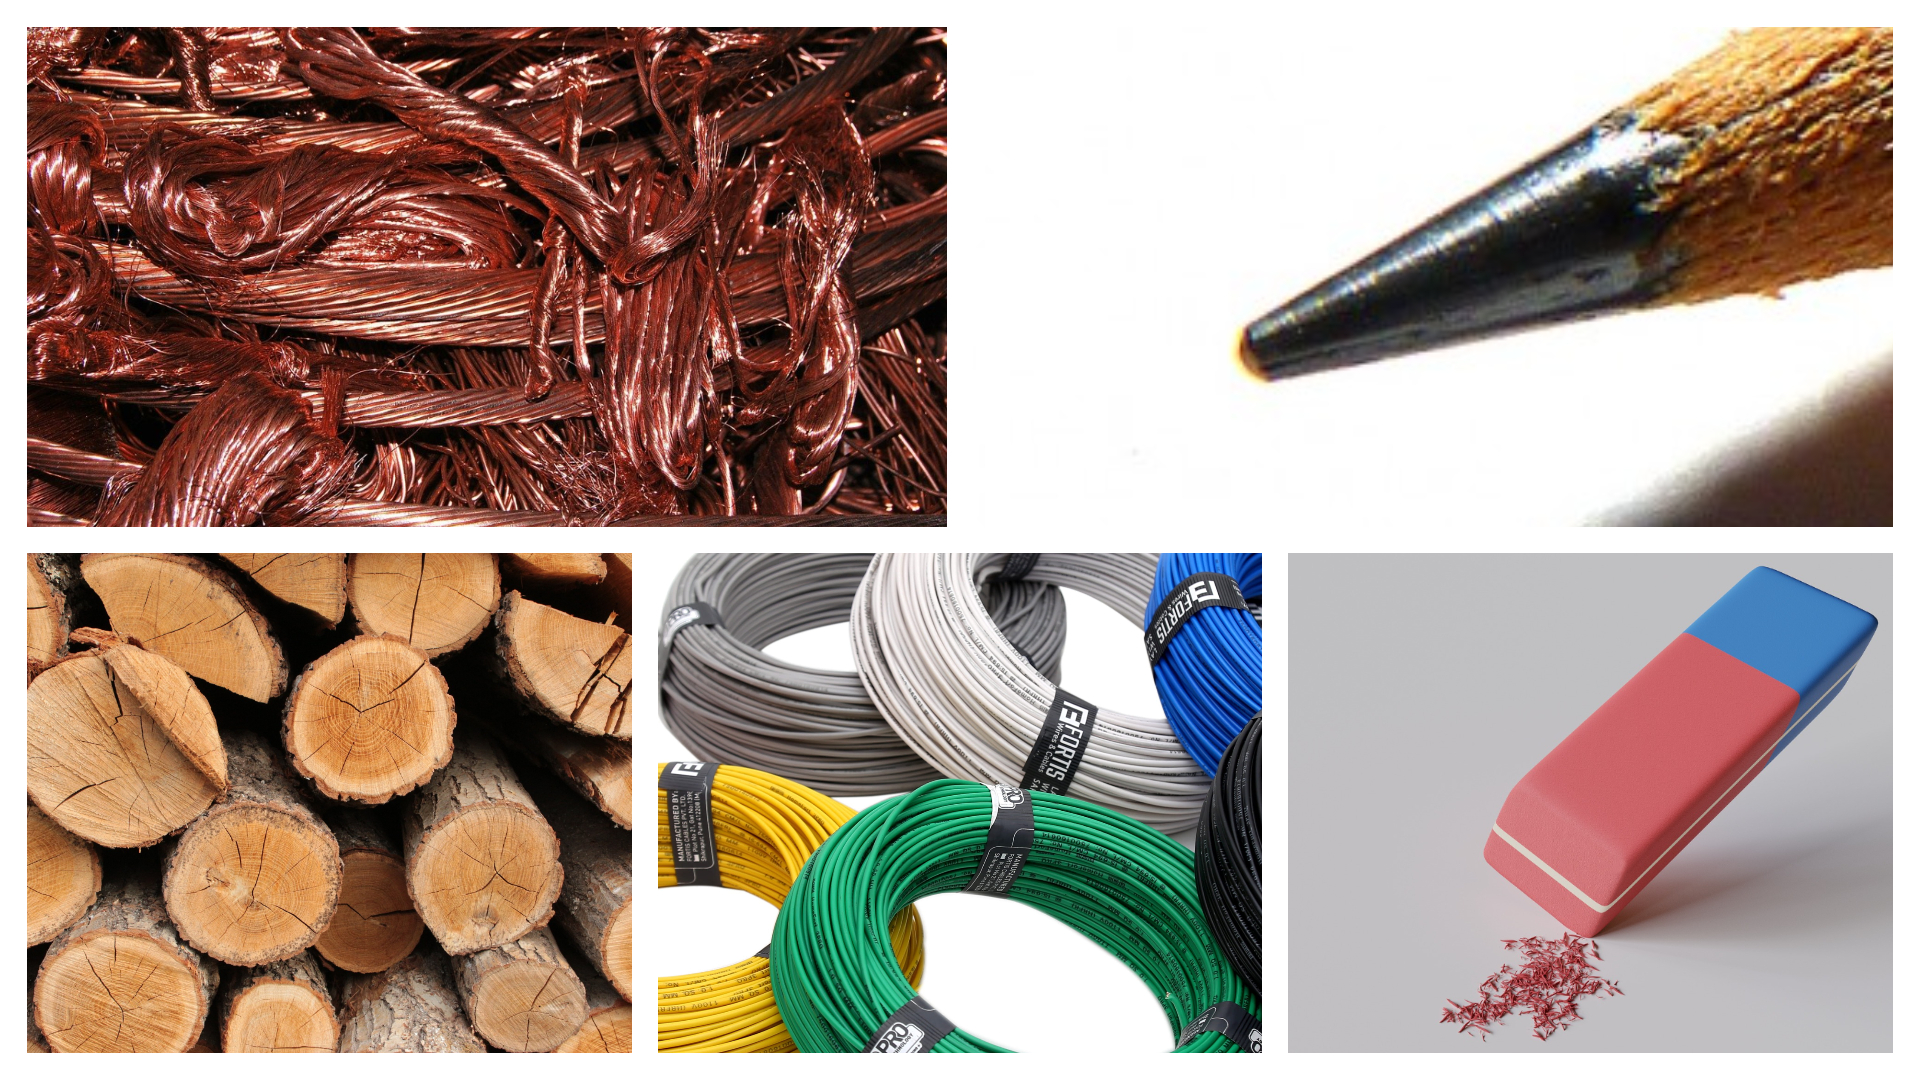 Parte superior materiales conductores: cobre y grafito. Parte inferior materiales aislantes: madera, plástico que recubre los cables y goma.